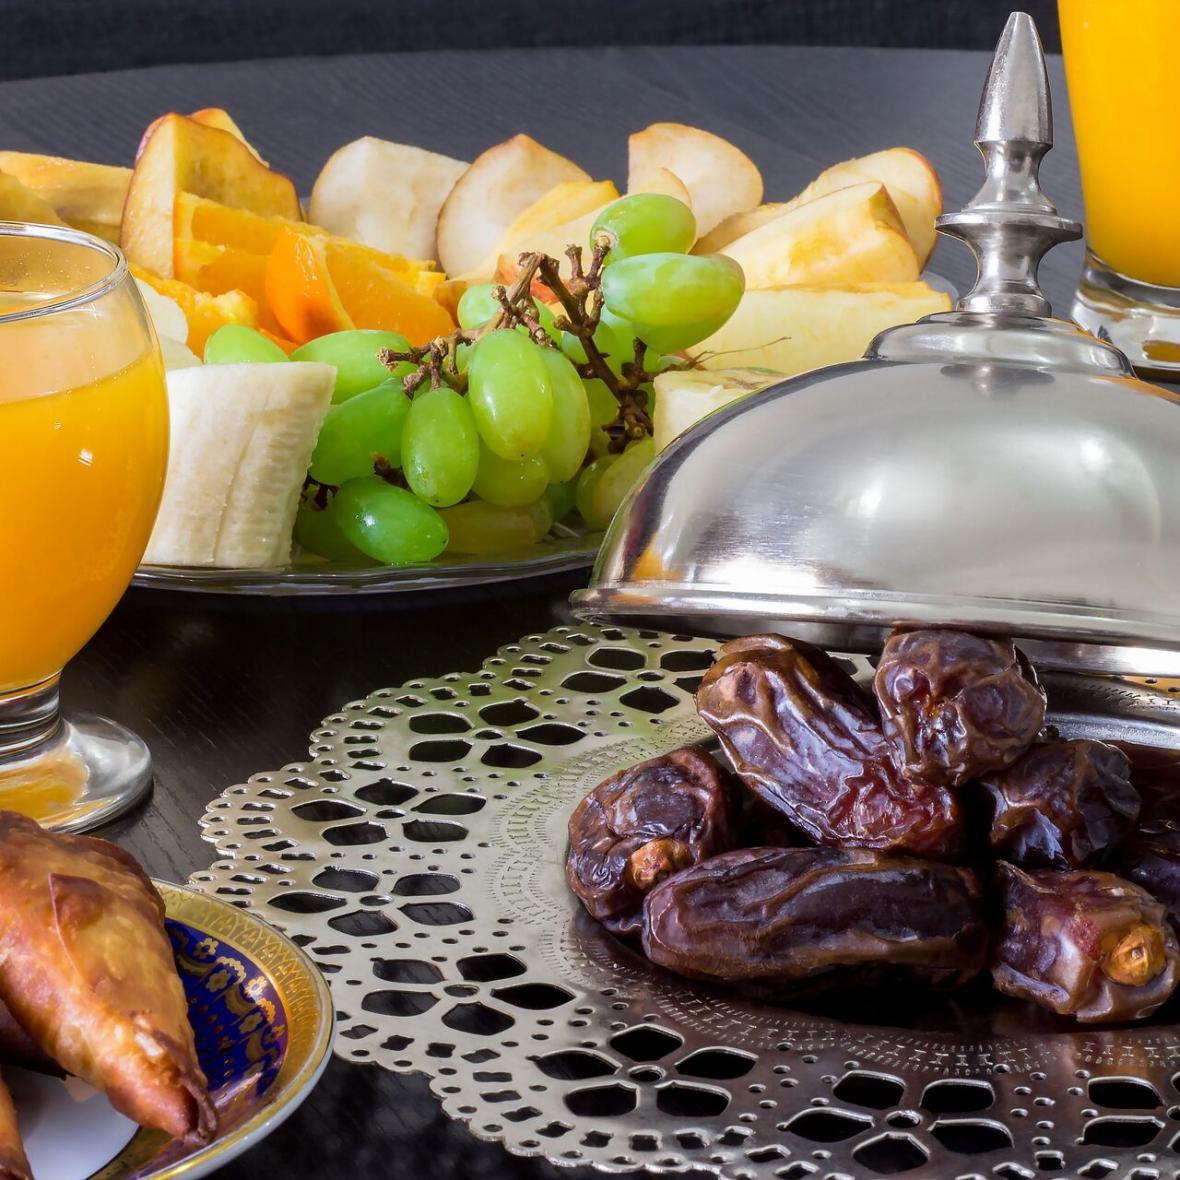 برنامه غذایی ایده آل در ماه رمضان؛ چند برنامه راحت و کاربردی